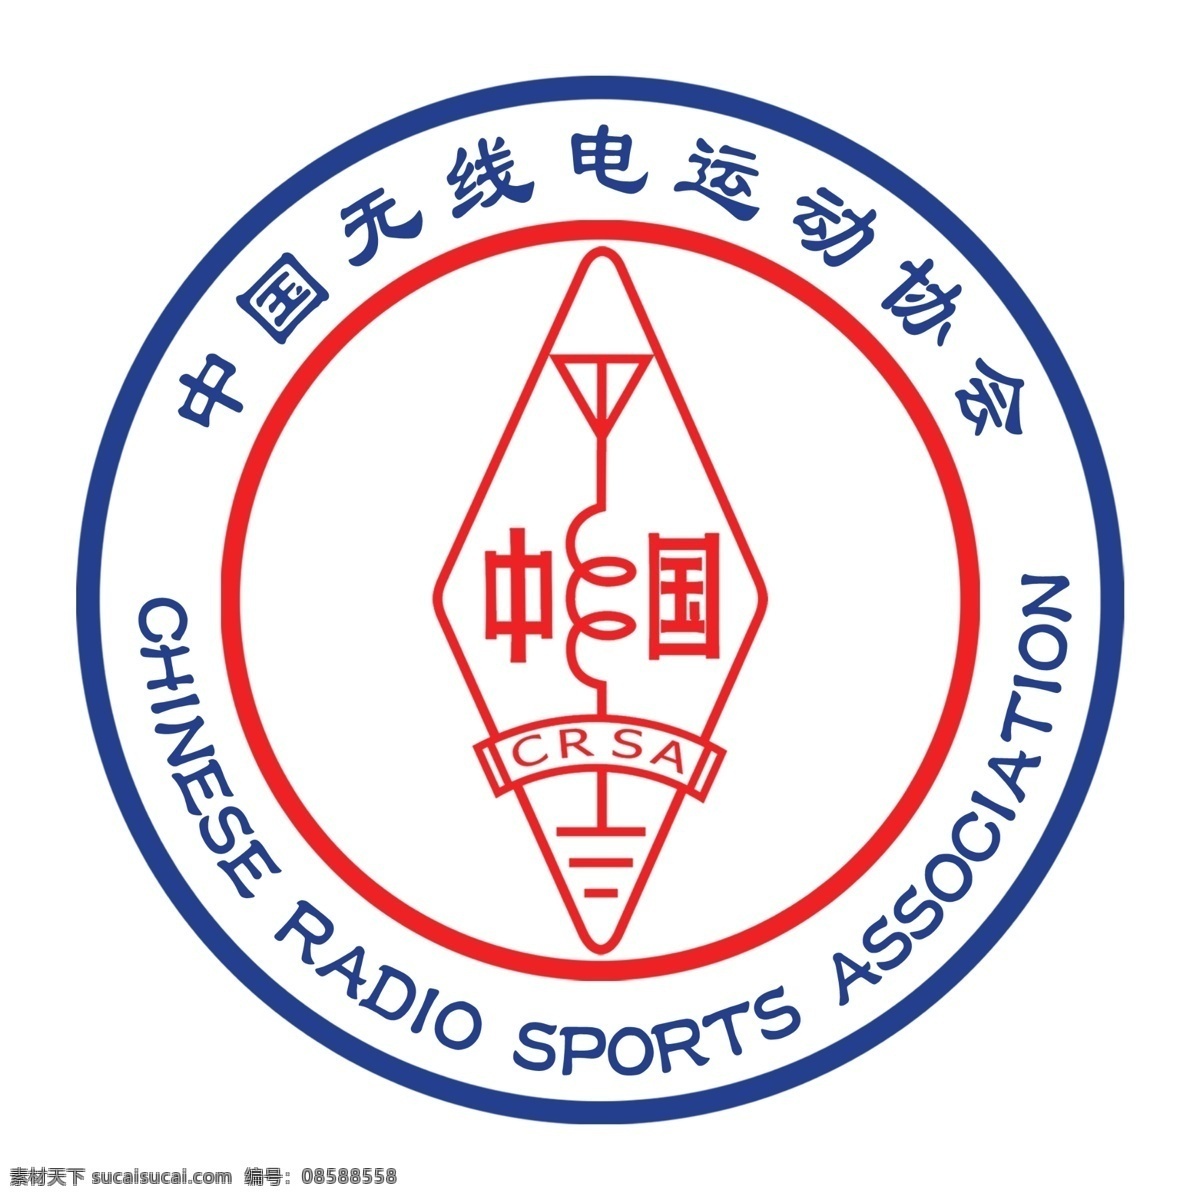 中国无线电运动协会 标 无线电 运动 协会 标志 应急通信 救援 公共标识标志 crac 标志图标